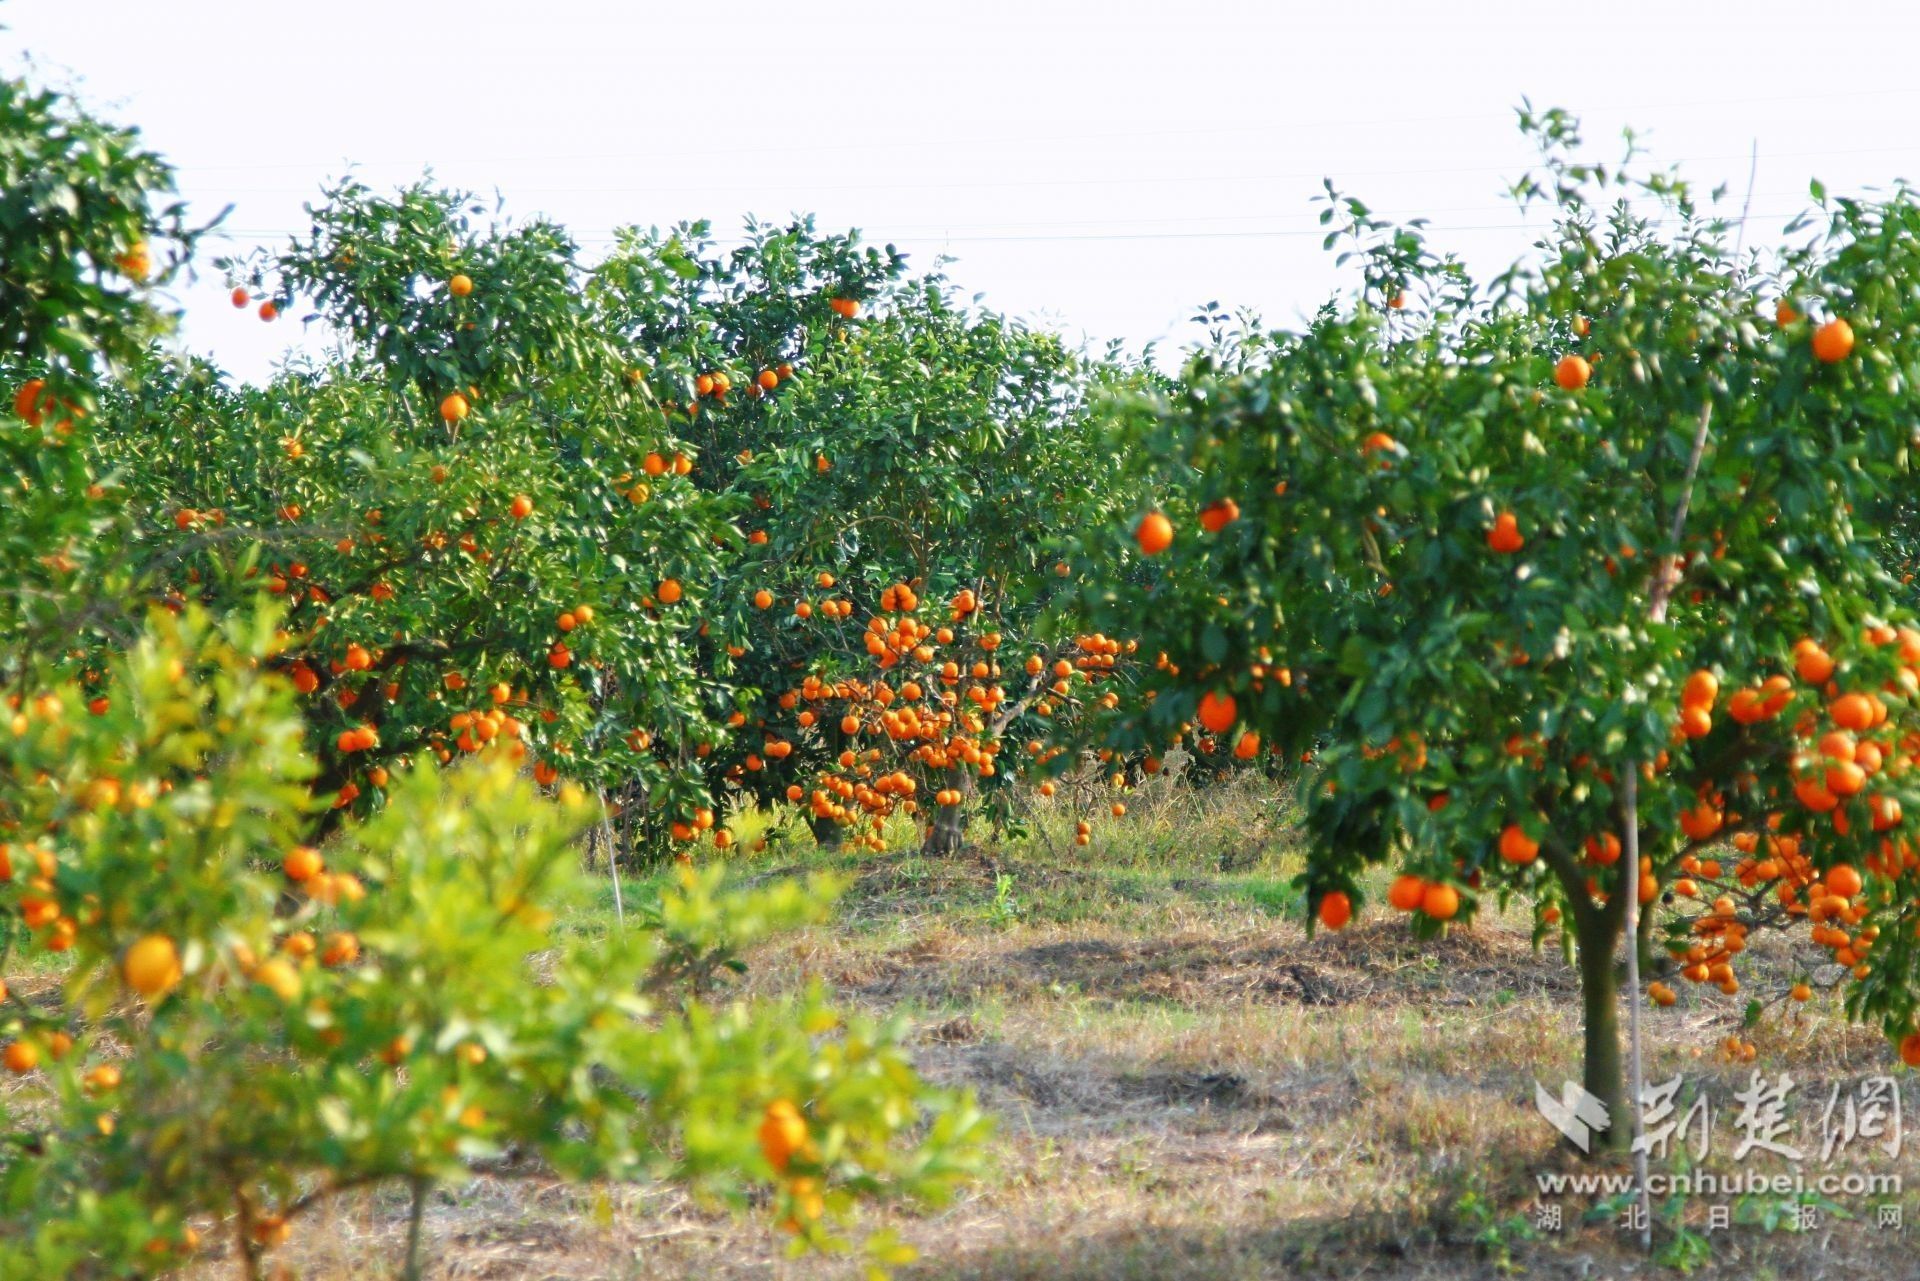 向巷村引进新品种砂糖橘，收入可观，带动村民共同致富。通讯员供图.jpg.jpg